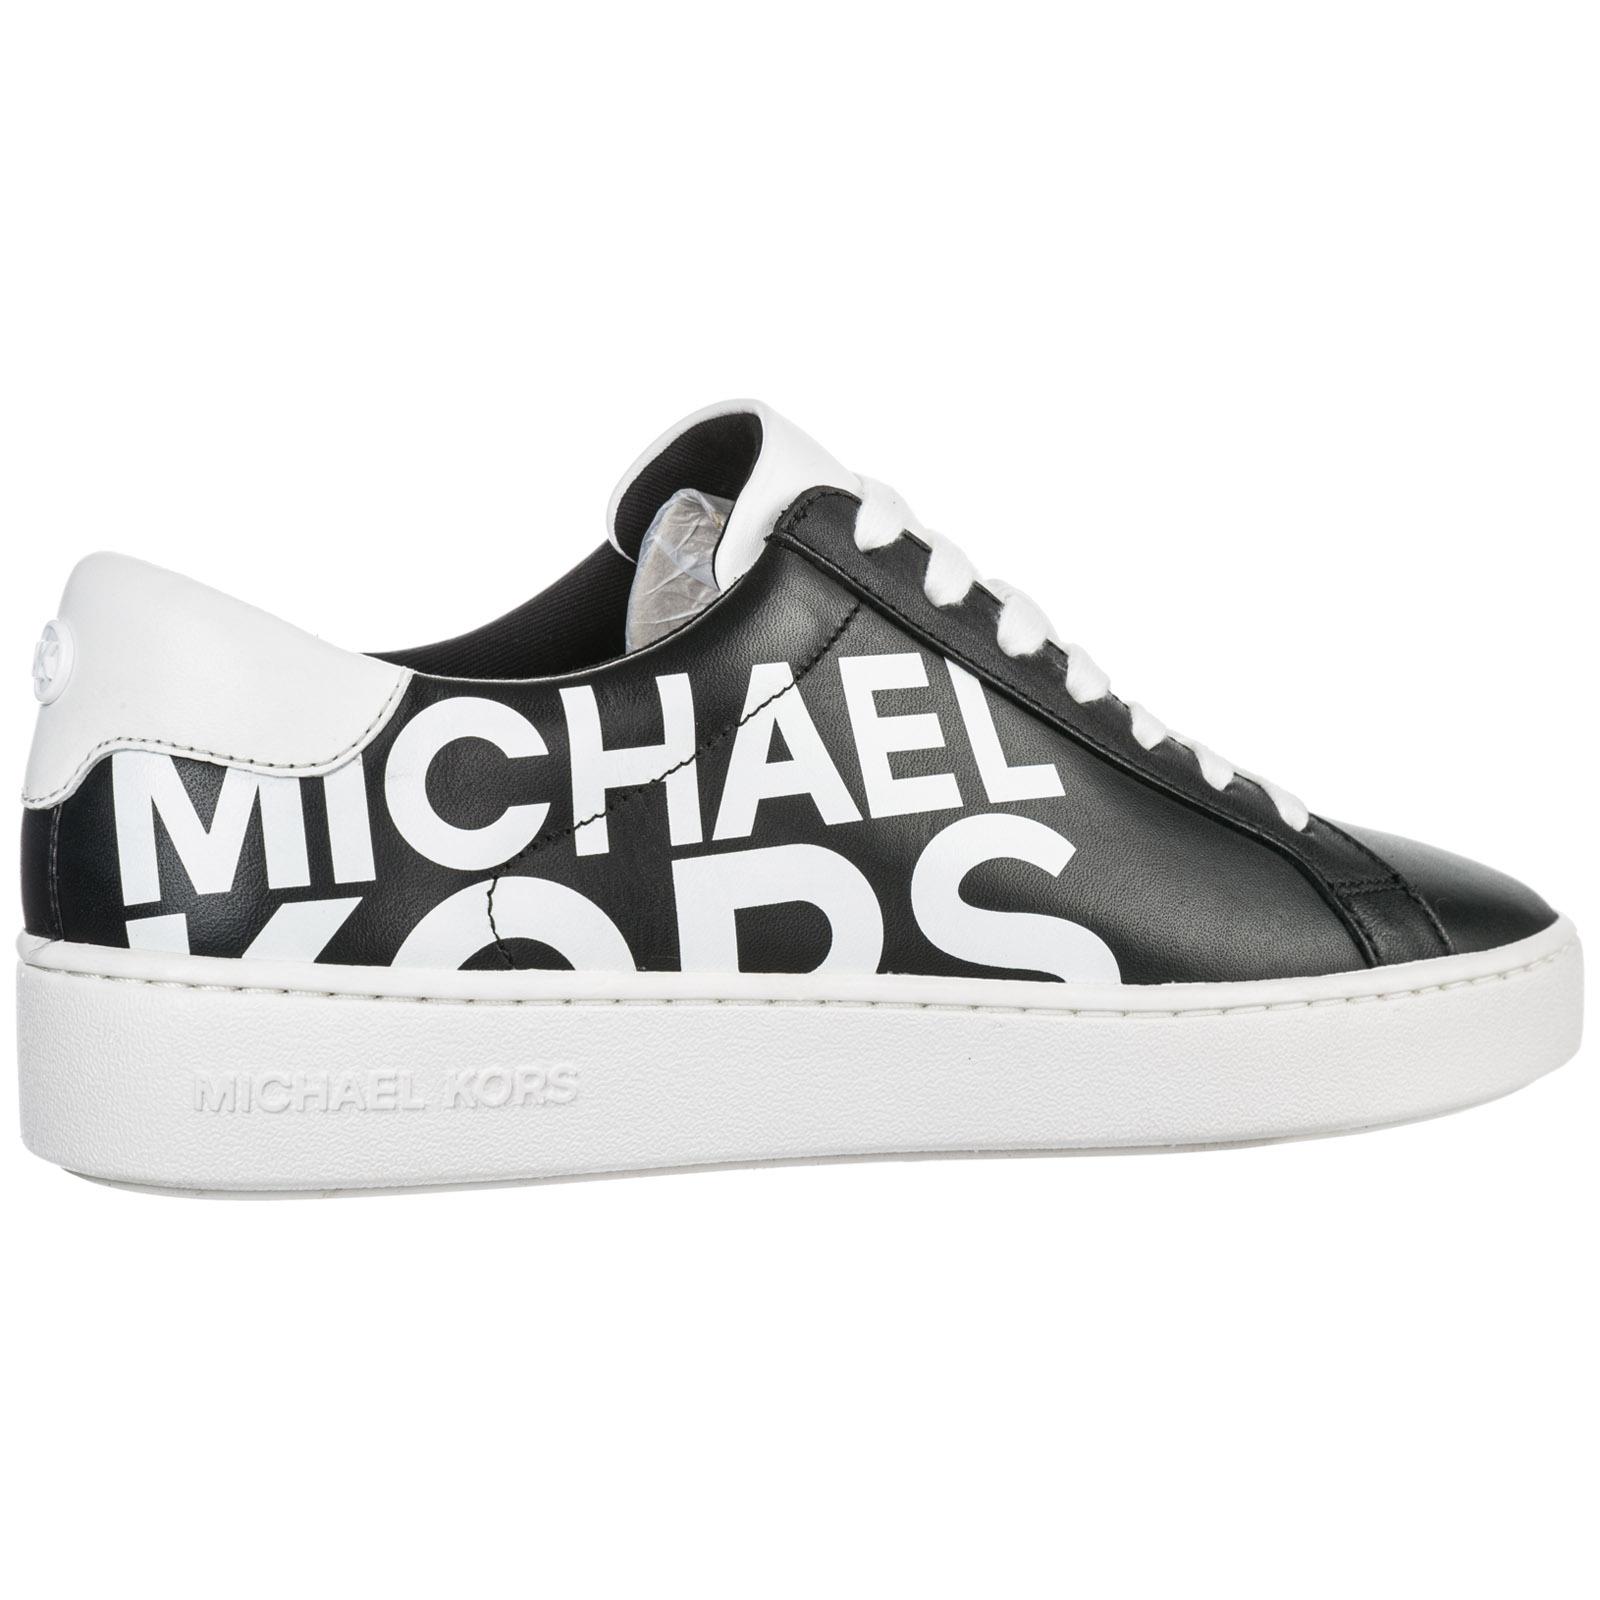 Michael Kors Schuhe Sneaker on Sale, 50% OFF | www.markiesminigolf.com